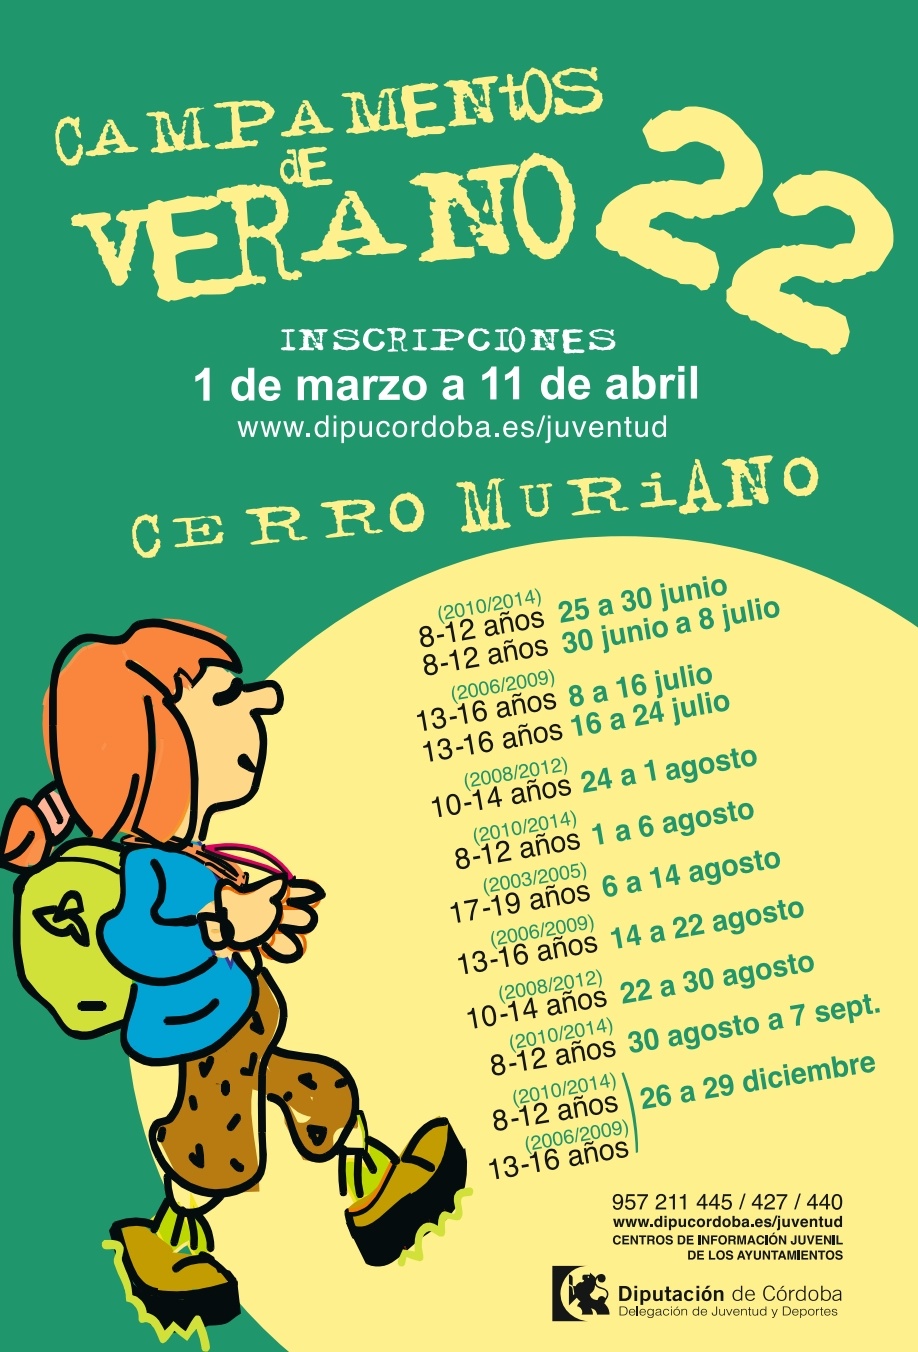 Abierto plazo de inscripciones para programa de actividades de verano para jóvenes en Córdoba.